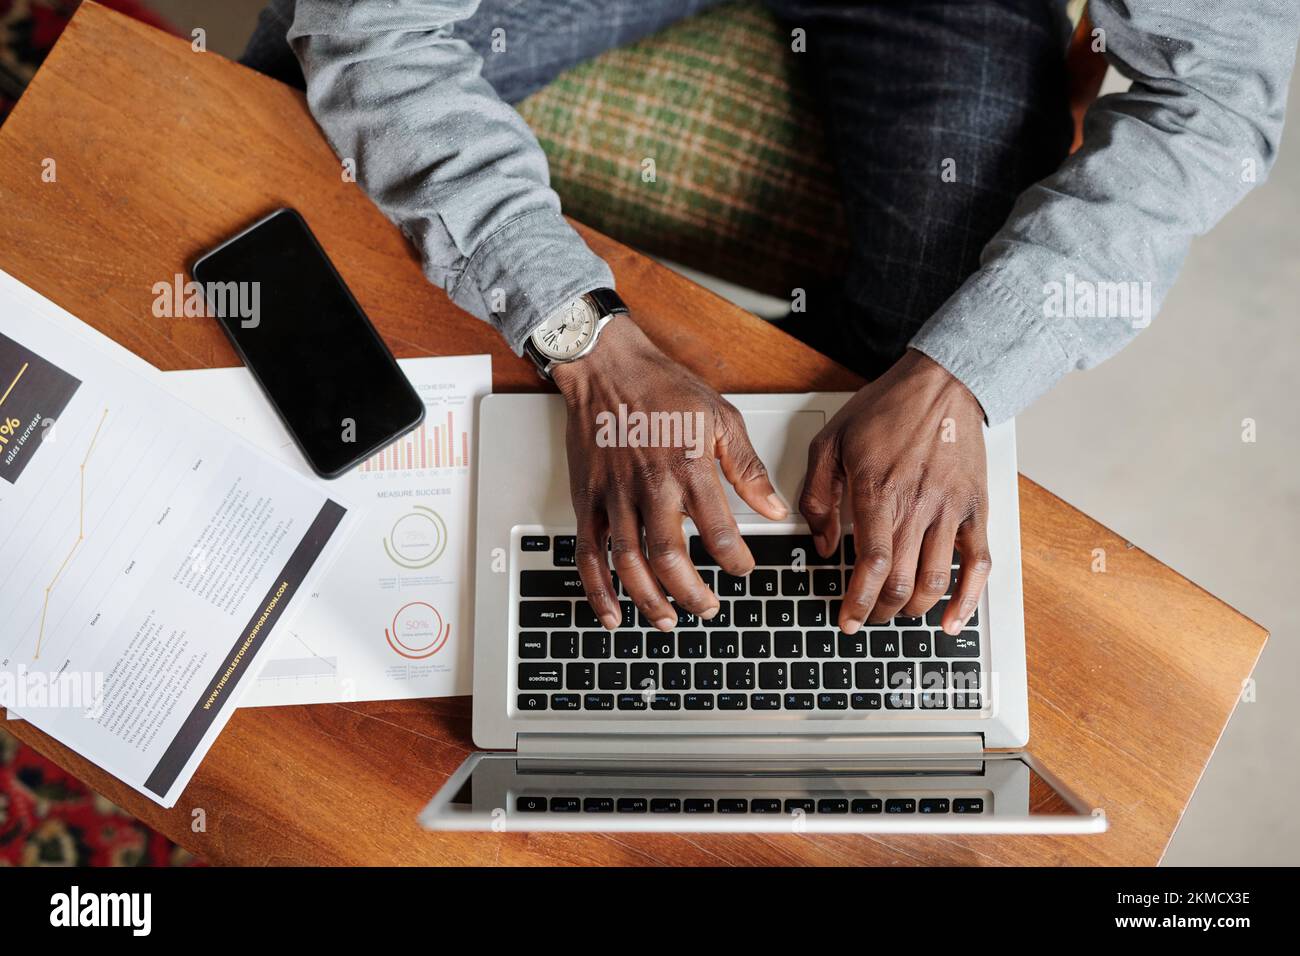 Draufsicht der Hände eines jungen Schwarzen, der die Tasten der Laptop-Tastatur drückt, während er mit Smartphone und Finanzunterlagen am Schreibtisch sitzt Stockfoto